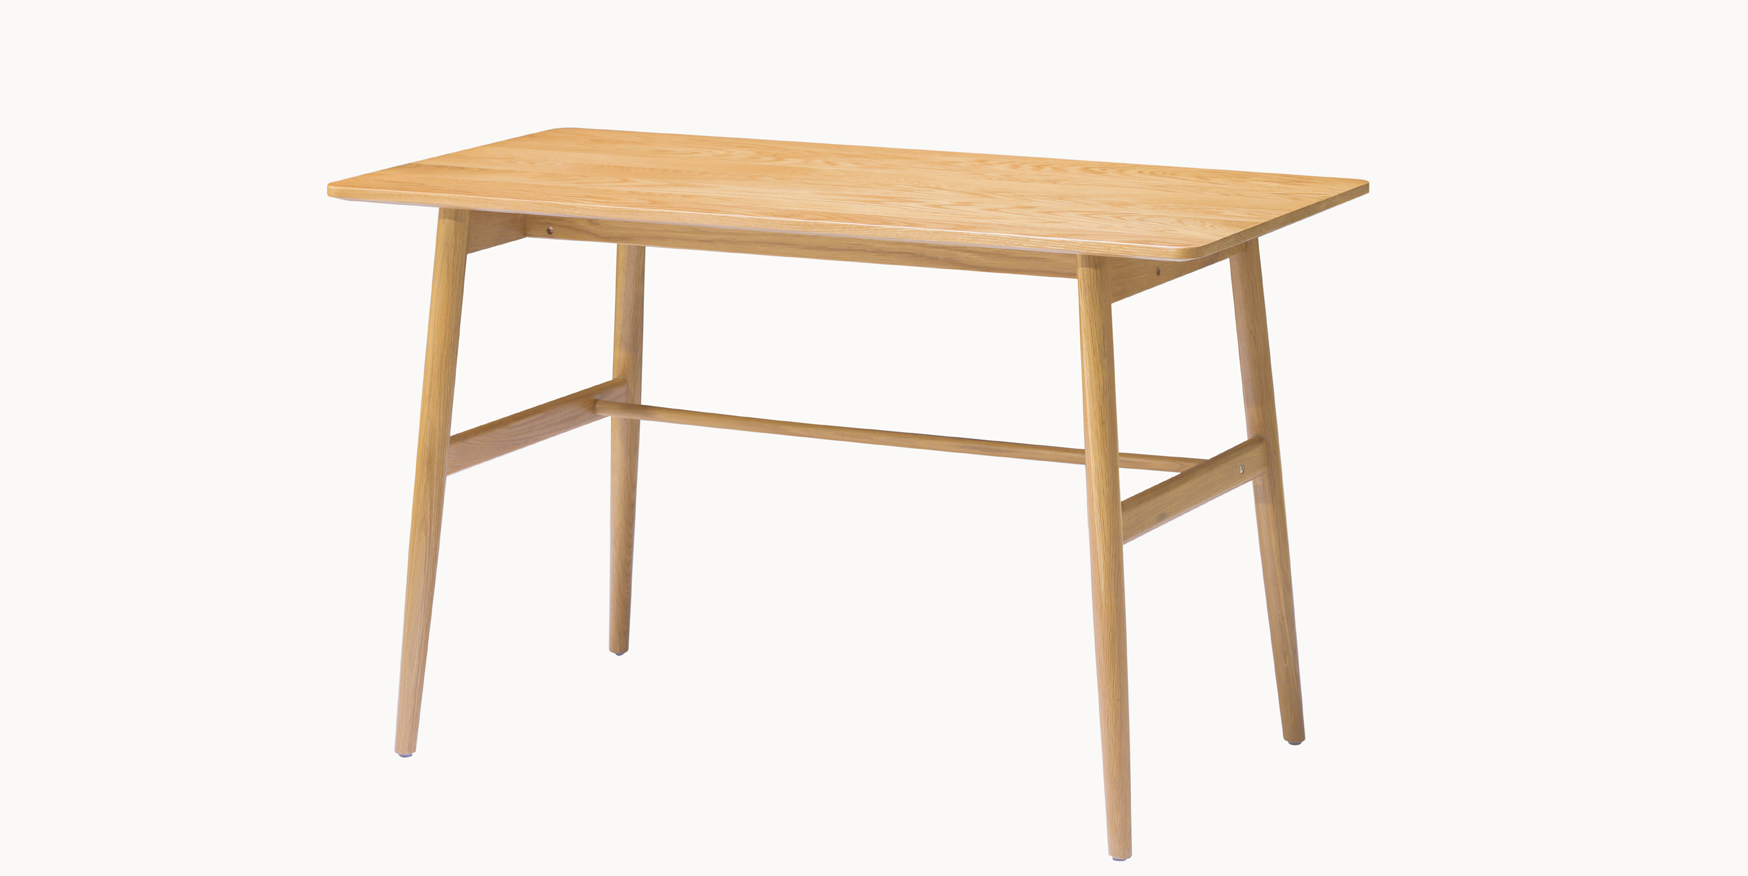 sz2 modern nordic wooden desk solid wood desk